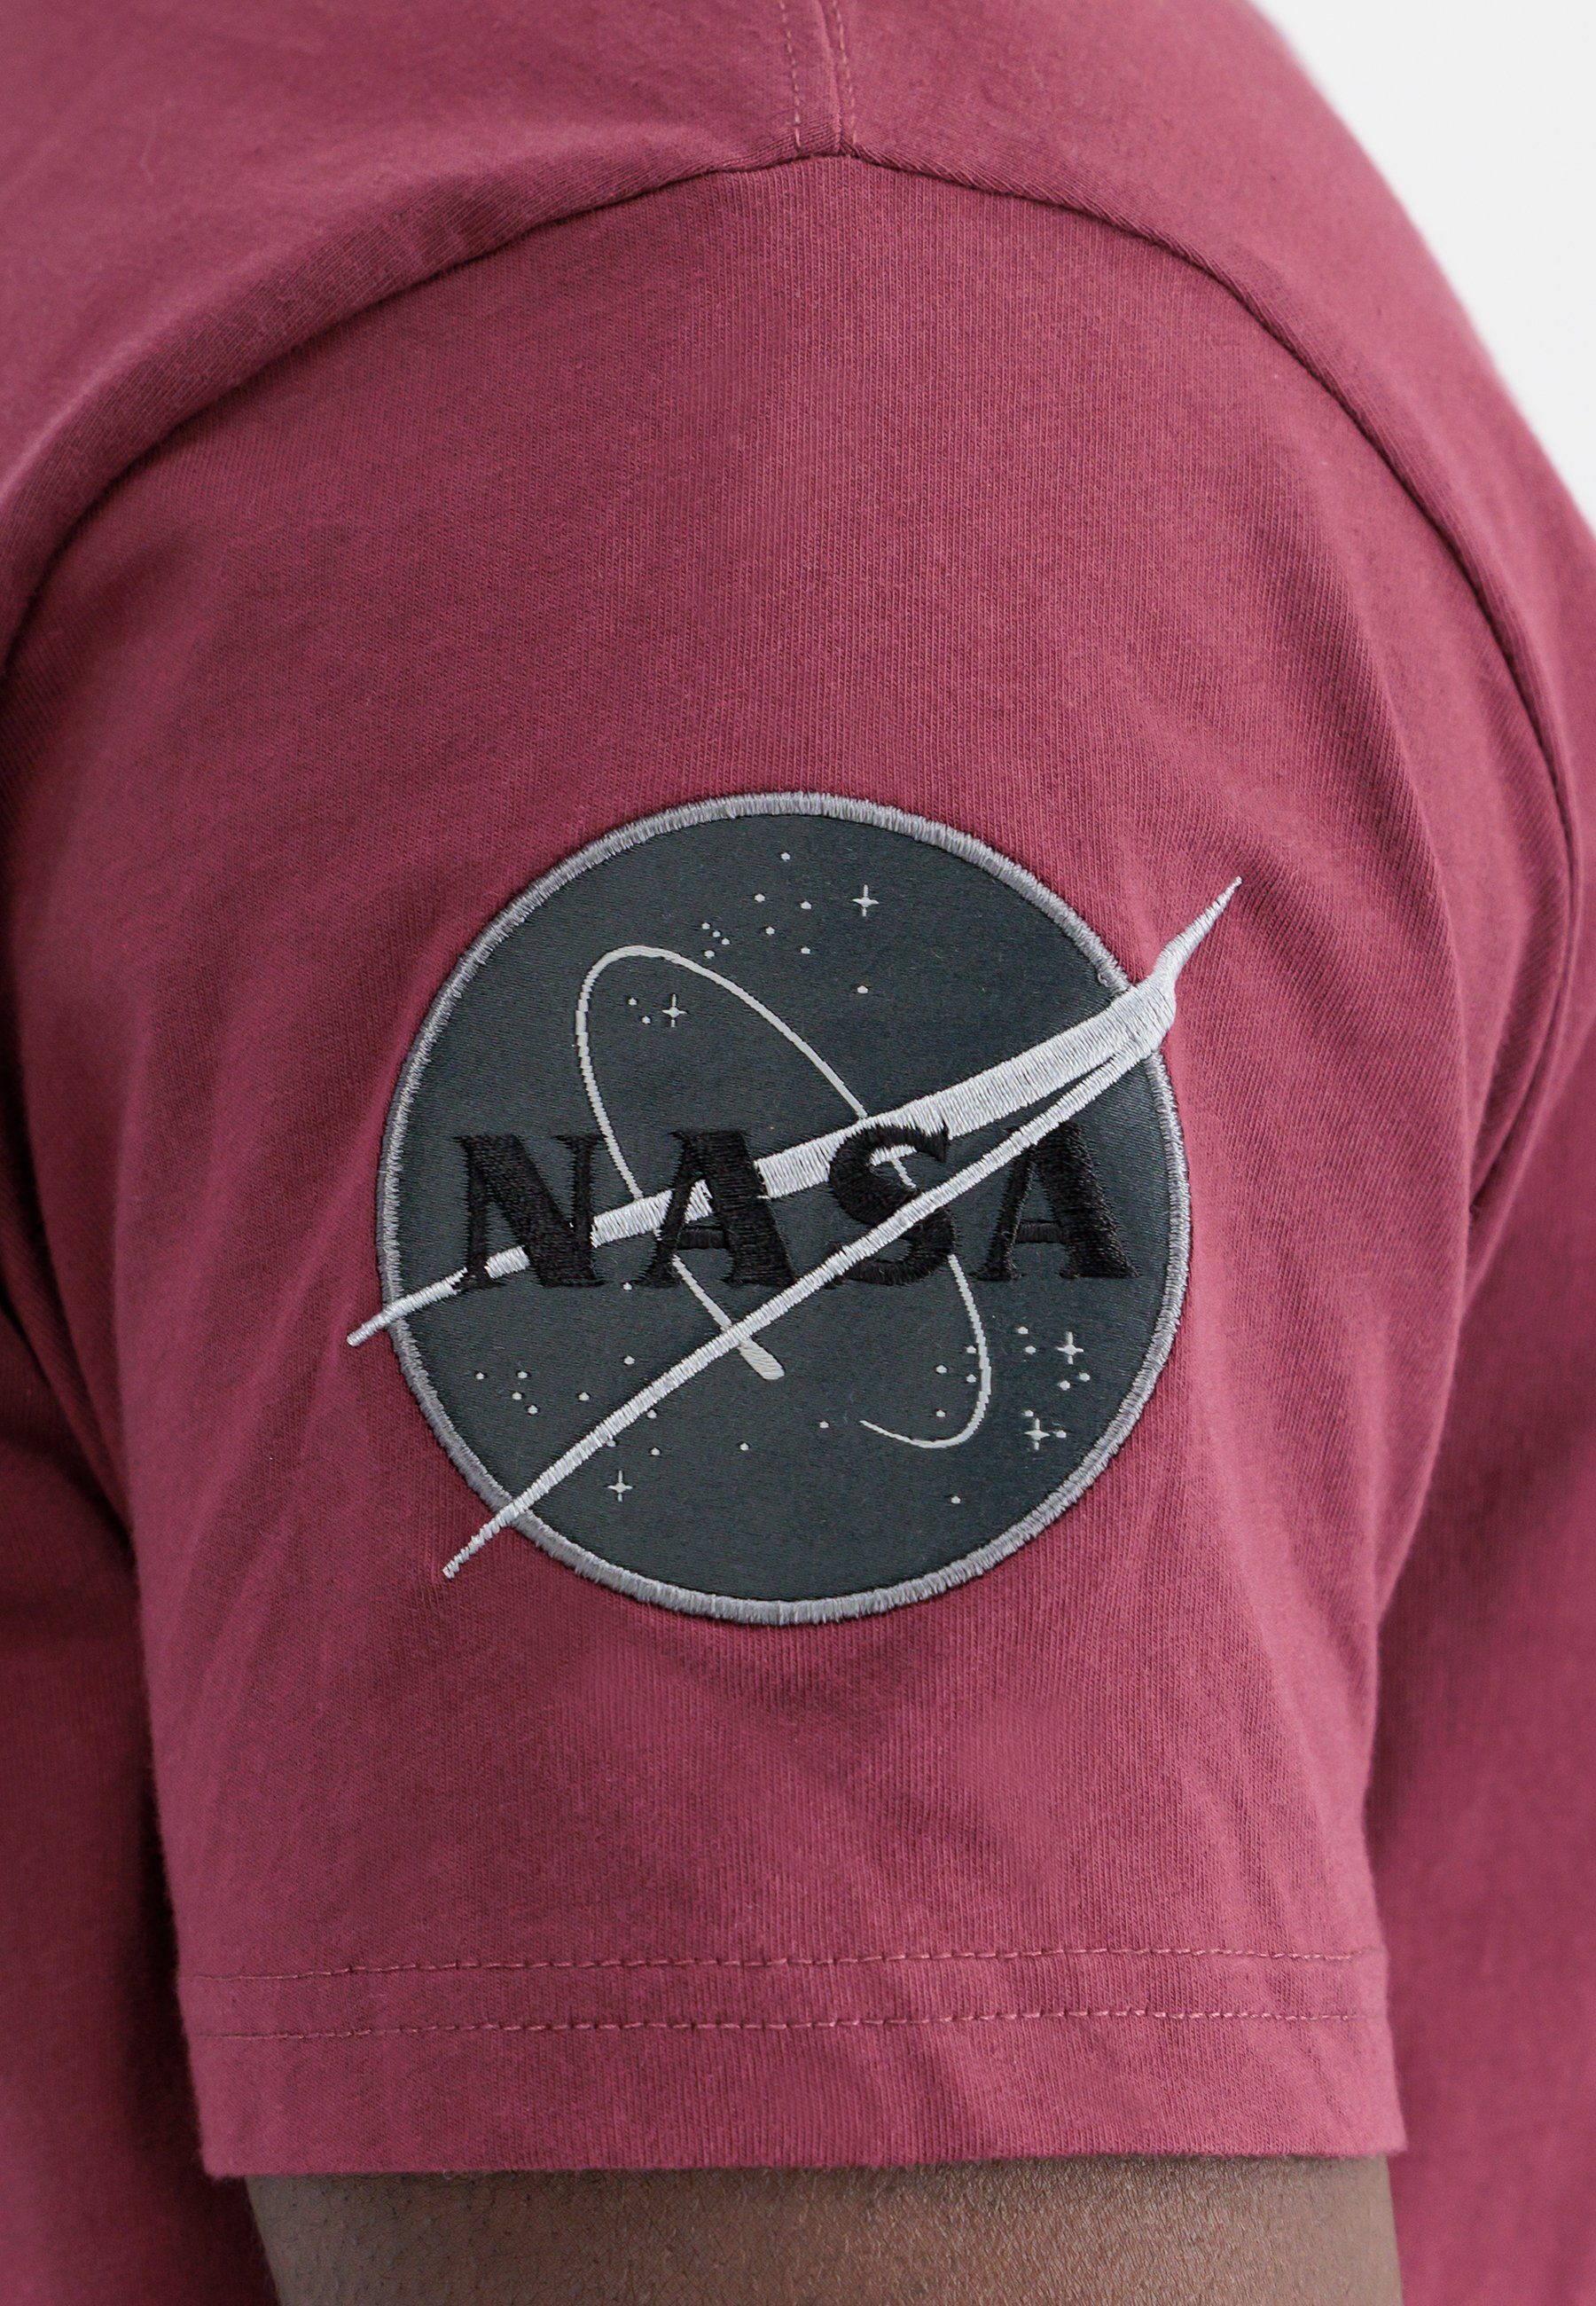 Alpha Industries T-shirt Men T-Shirts Dark Side T-Shirt